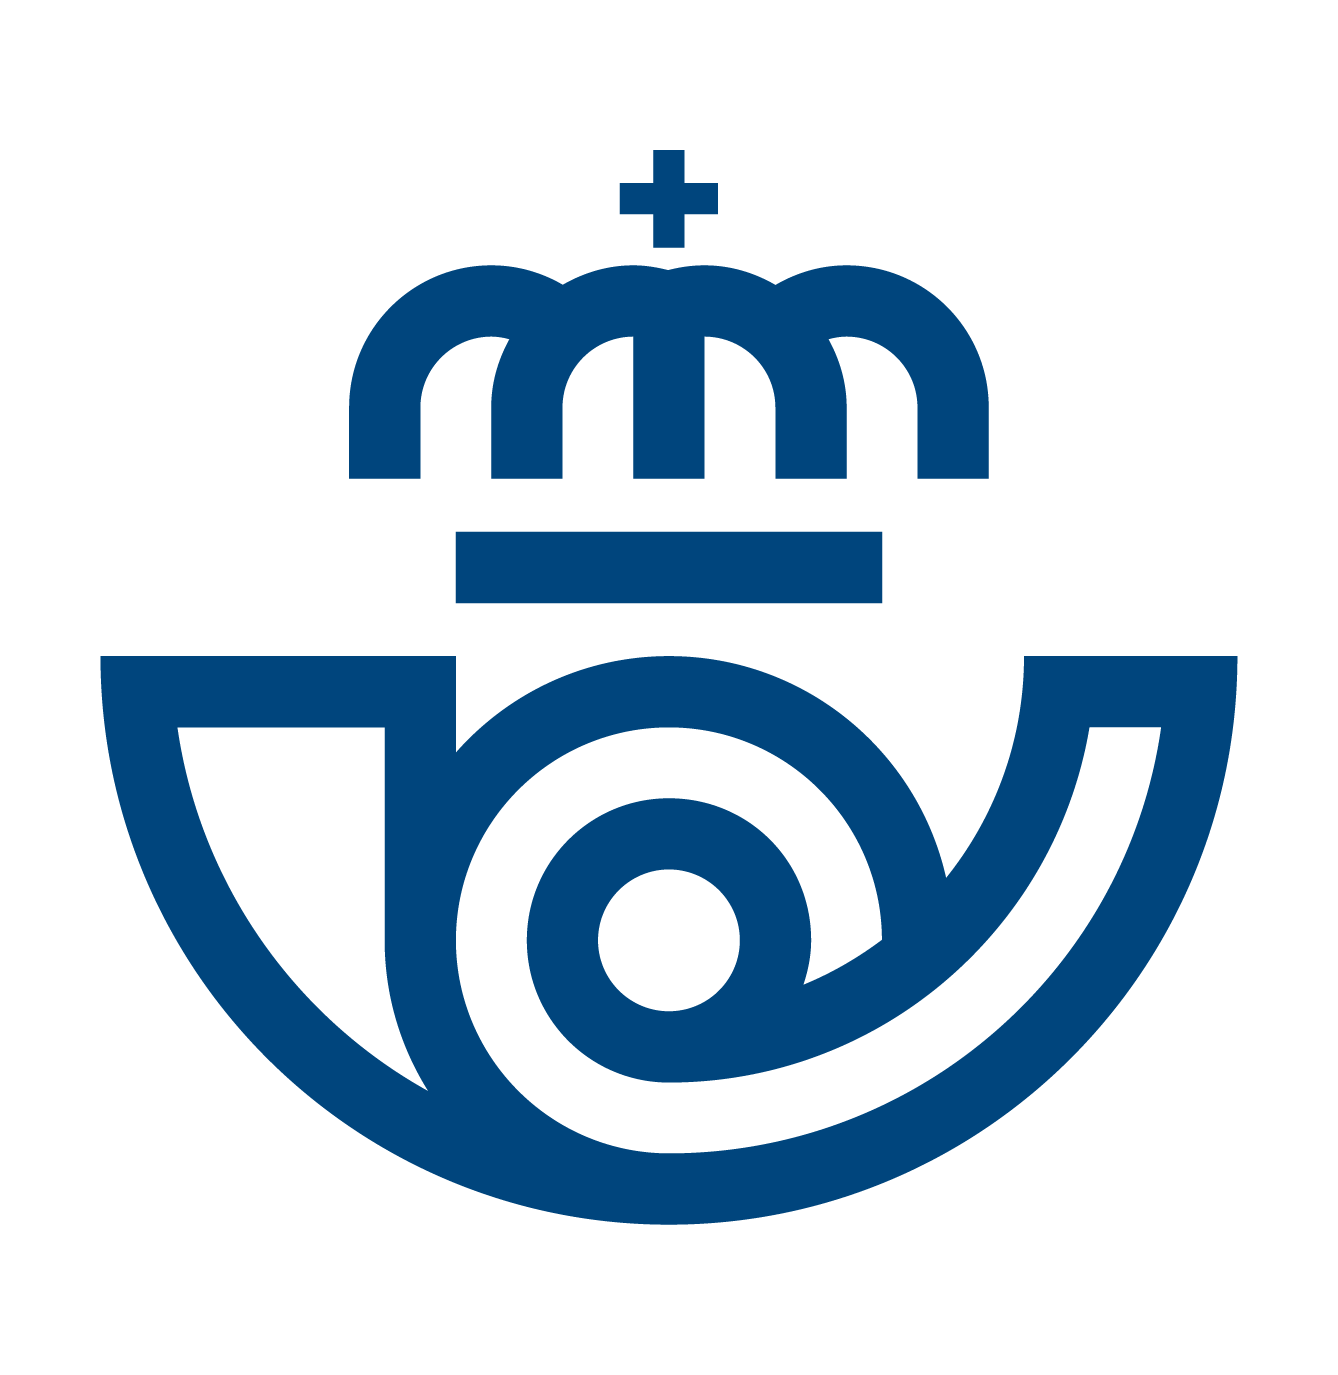 New Logo and Identity for Correos by Summa